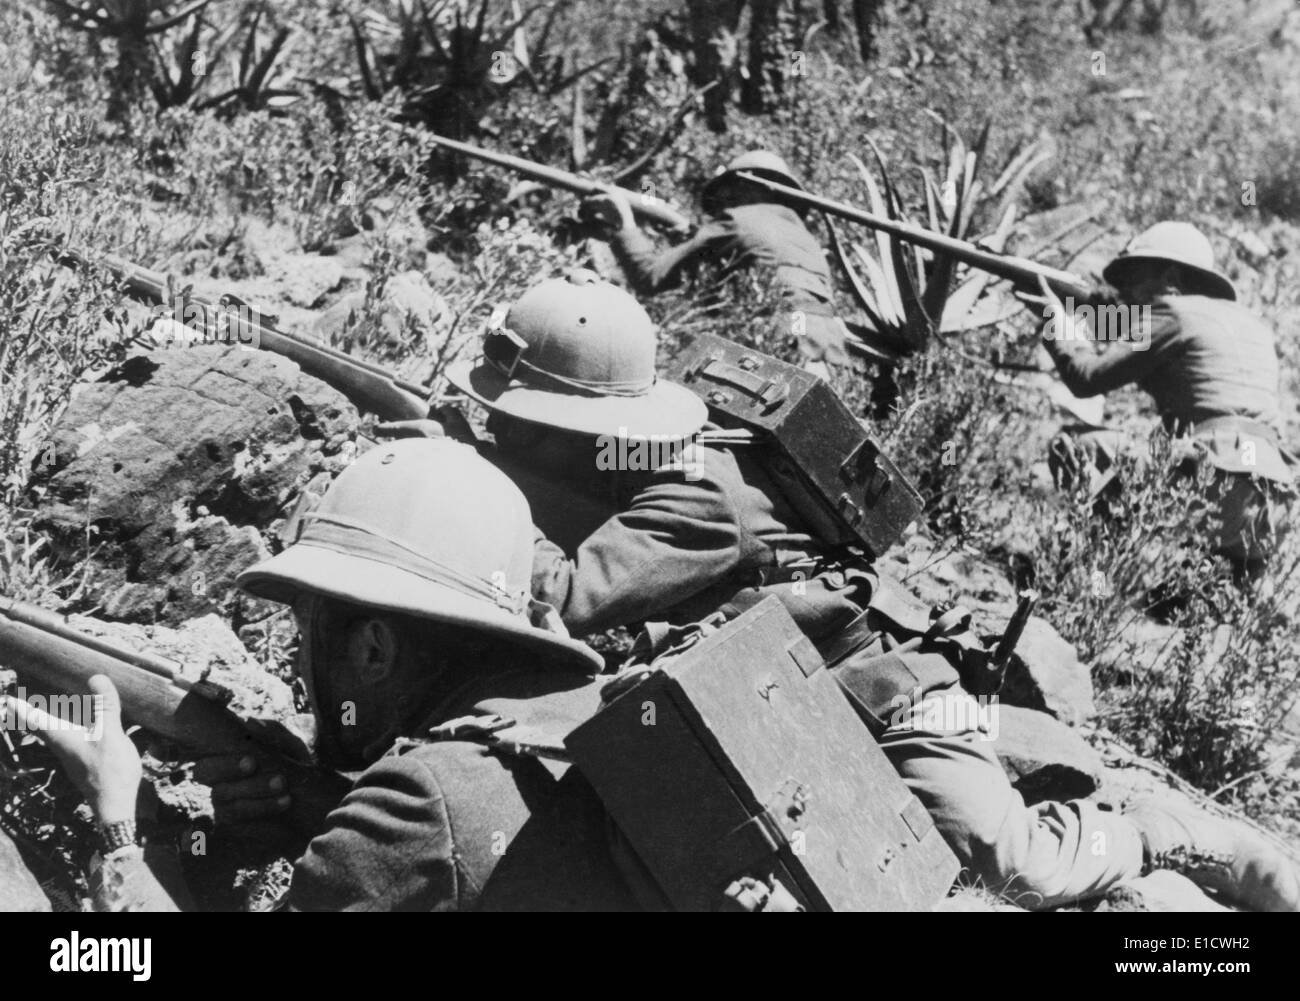 Quatre soldats italiens prenant fin en Ethiopie en 1935. La Guerre italo-éthiopienne, 1935-1936. (BSLOC 2014 7 35) Banque D'Images